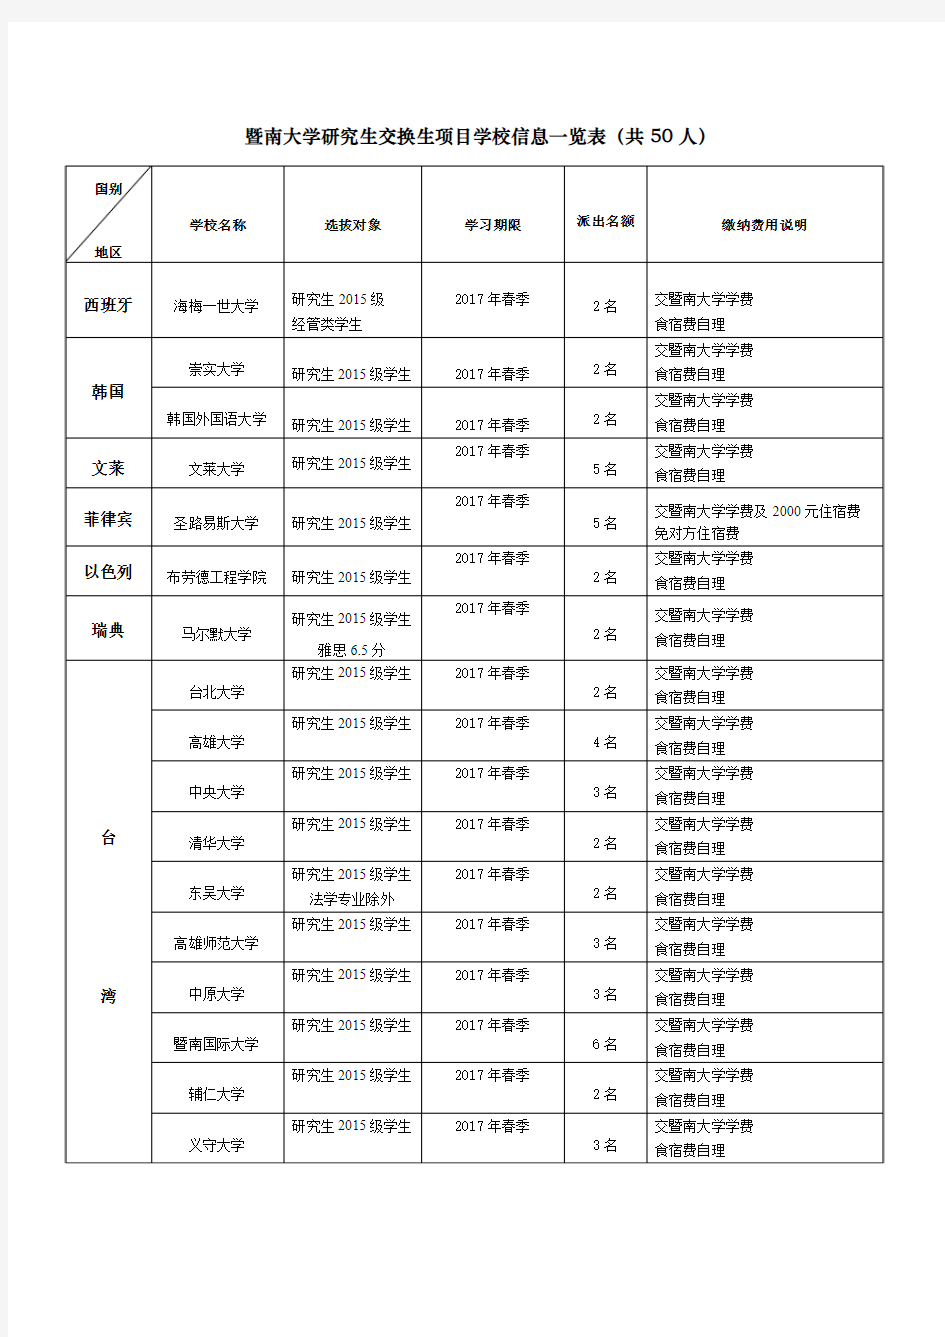 暨南大学研究生交换生项目学校信息一览表(共50人)